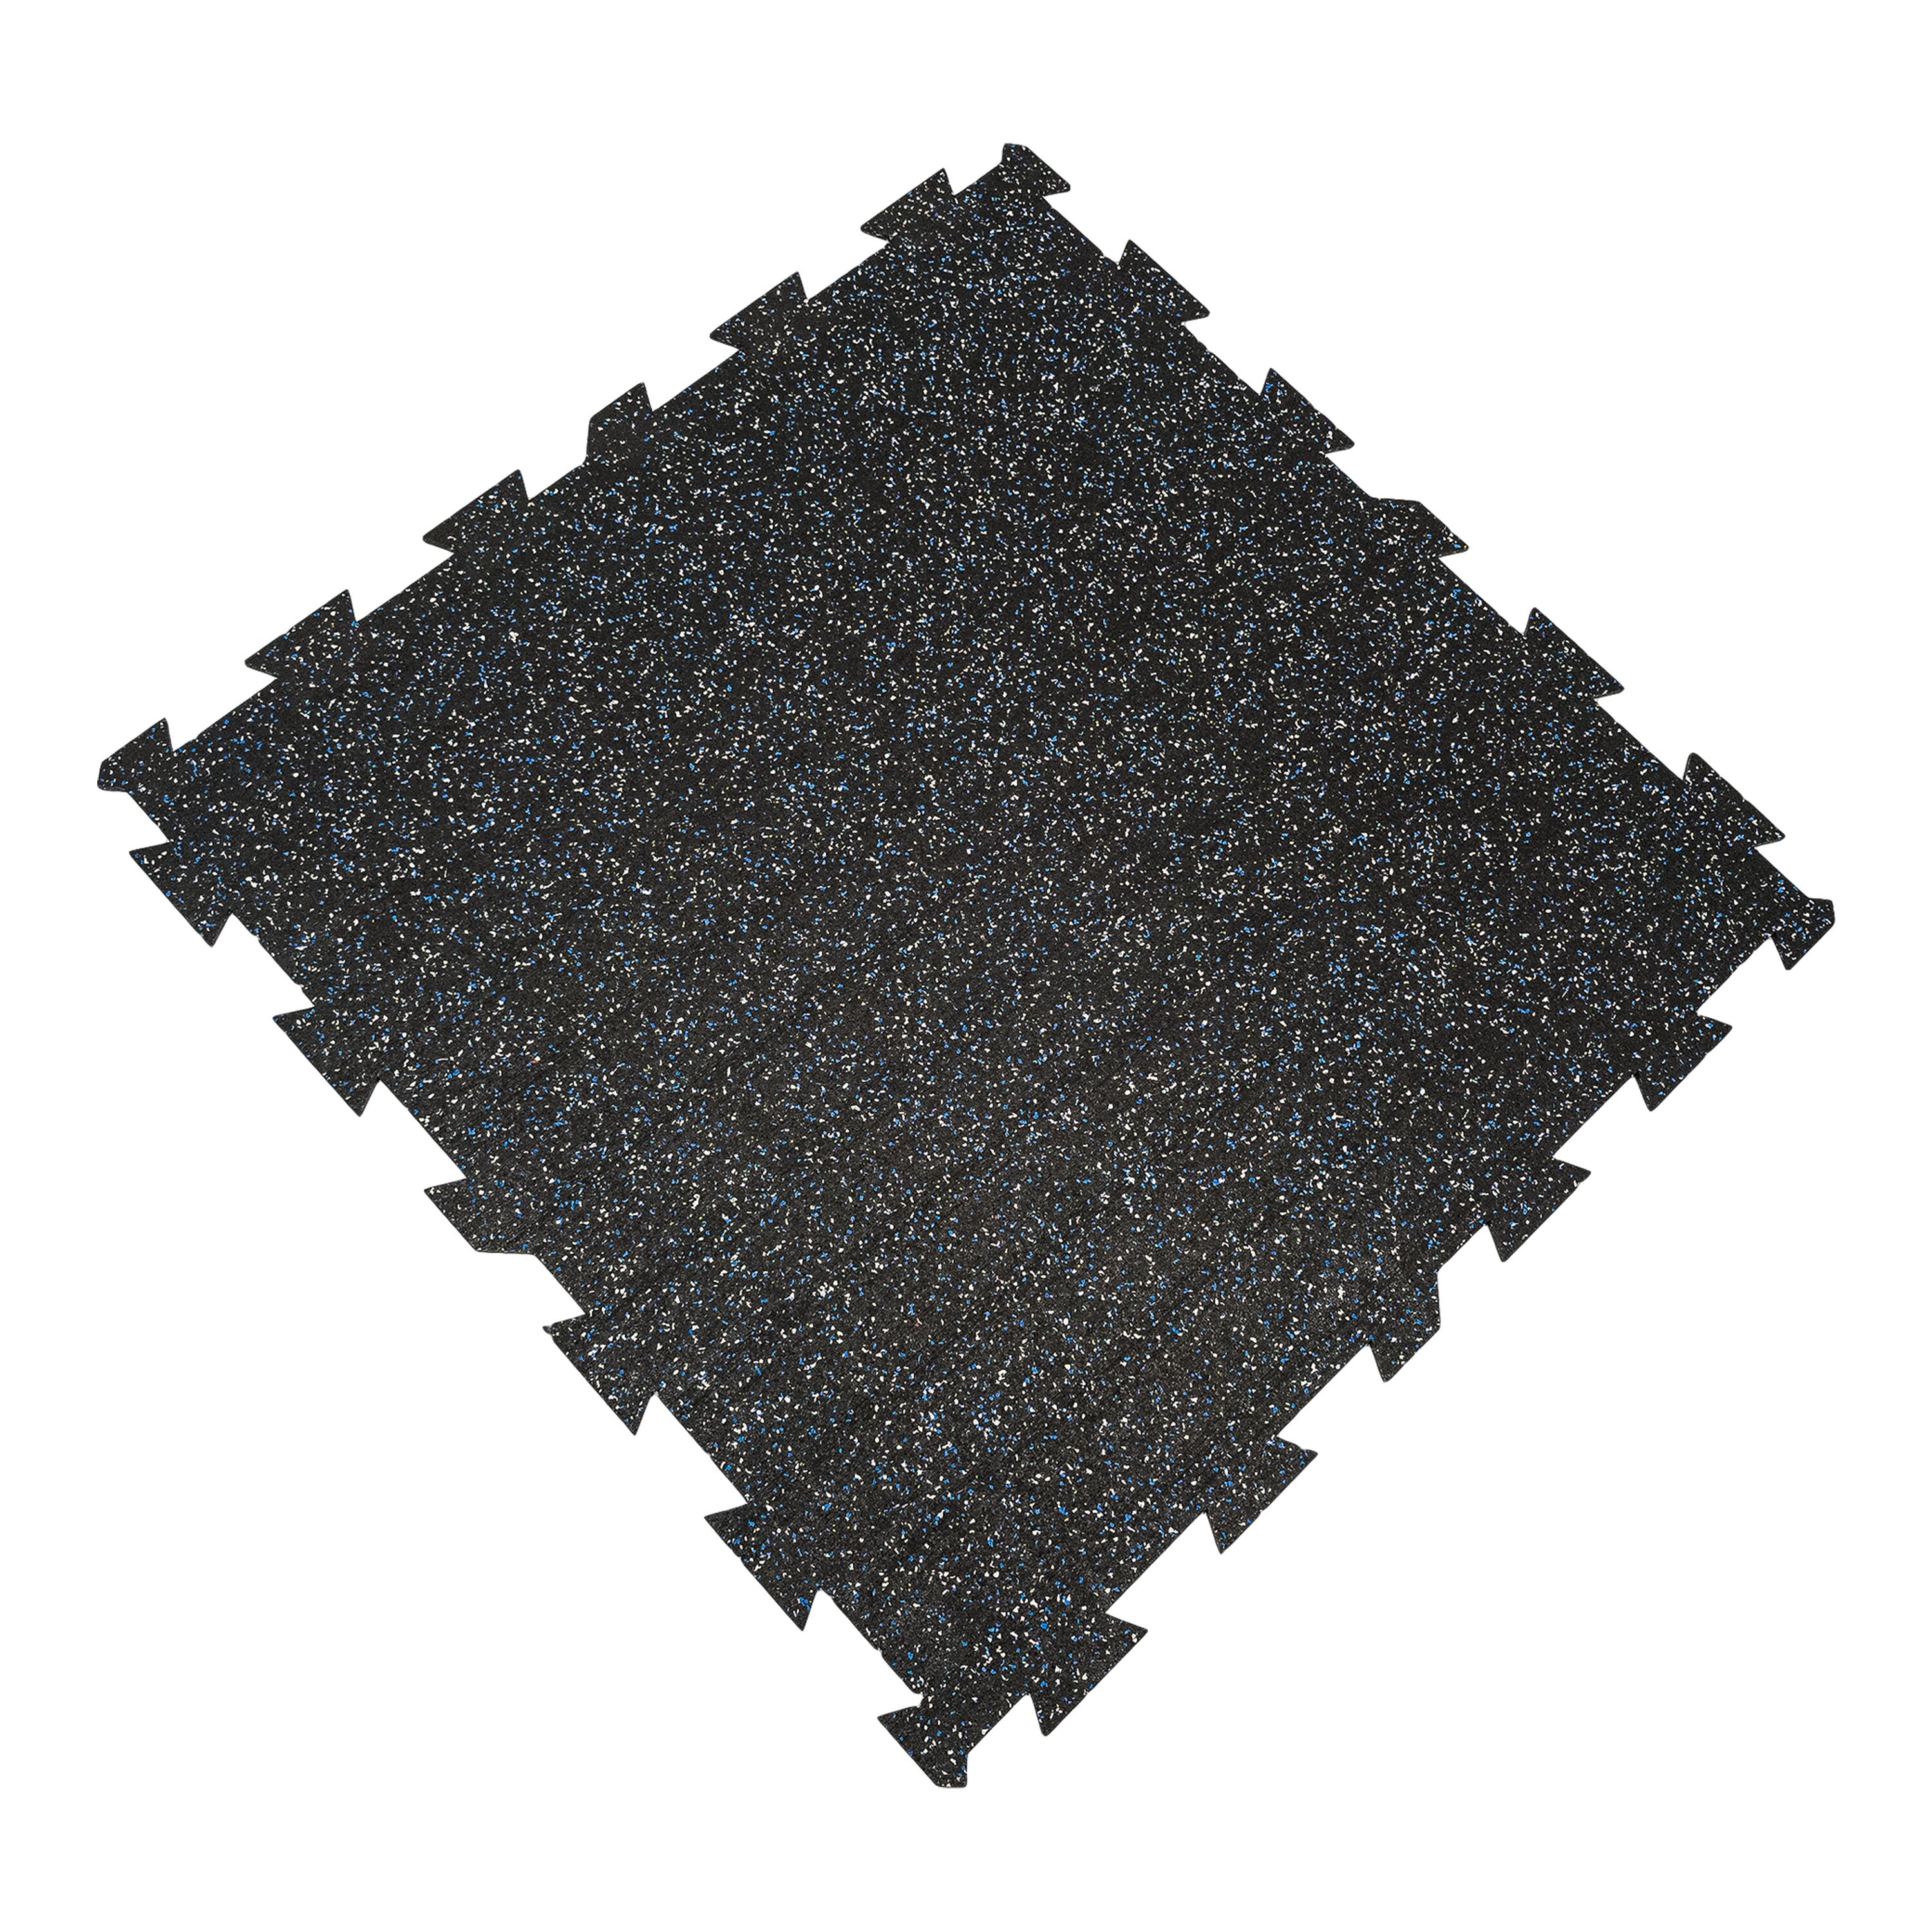 Černo-bílo-modrá podlahová guma FLOMA FitFlo SF1050 - délka 100 cm, šířka 100 cm, výška 0,8 cm